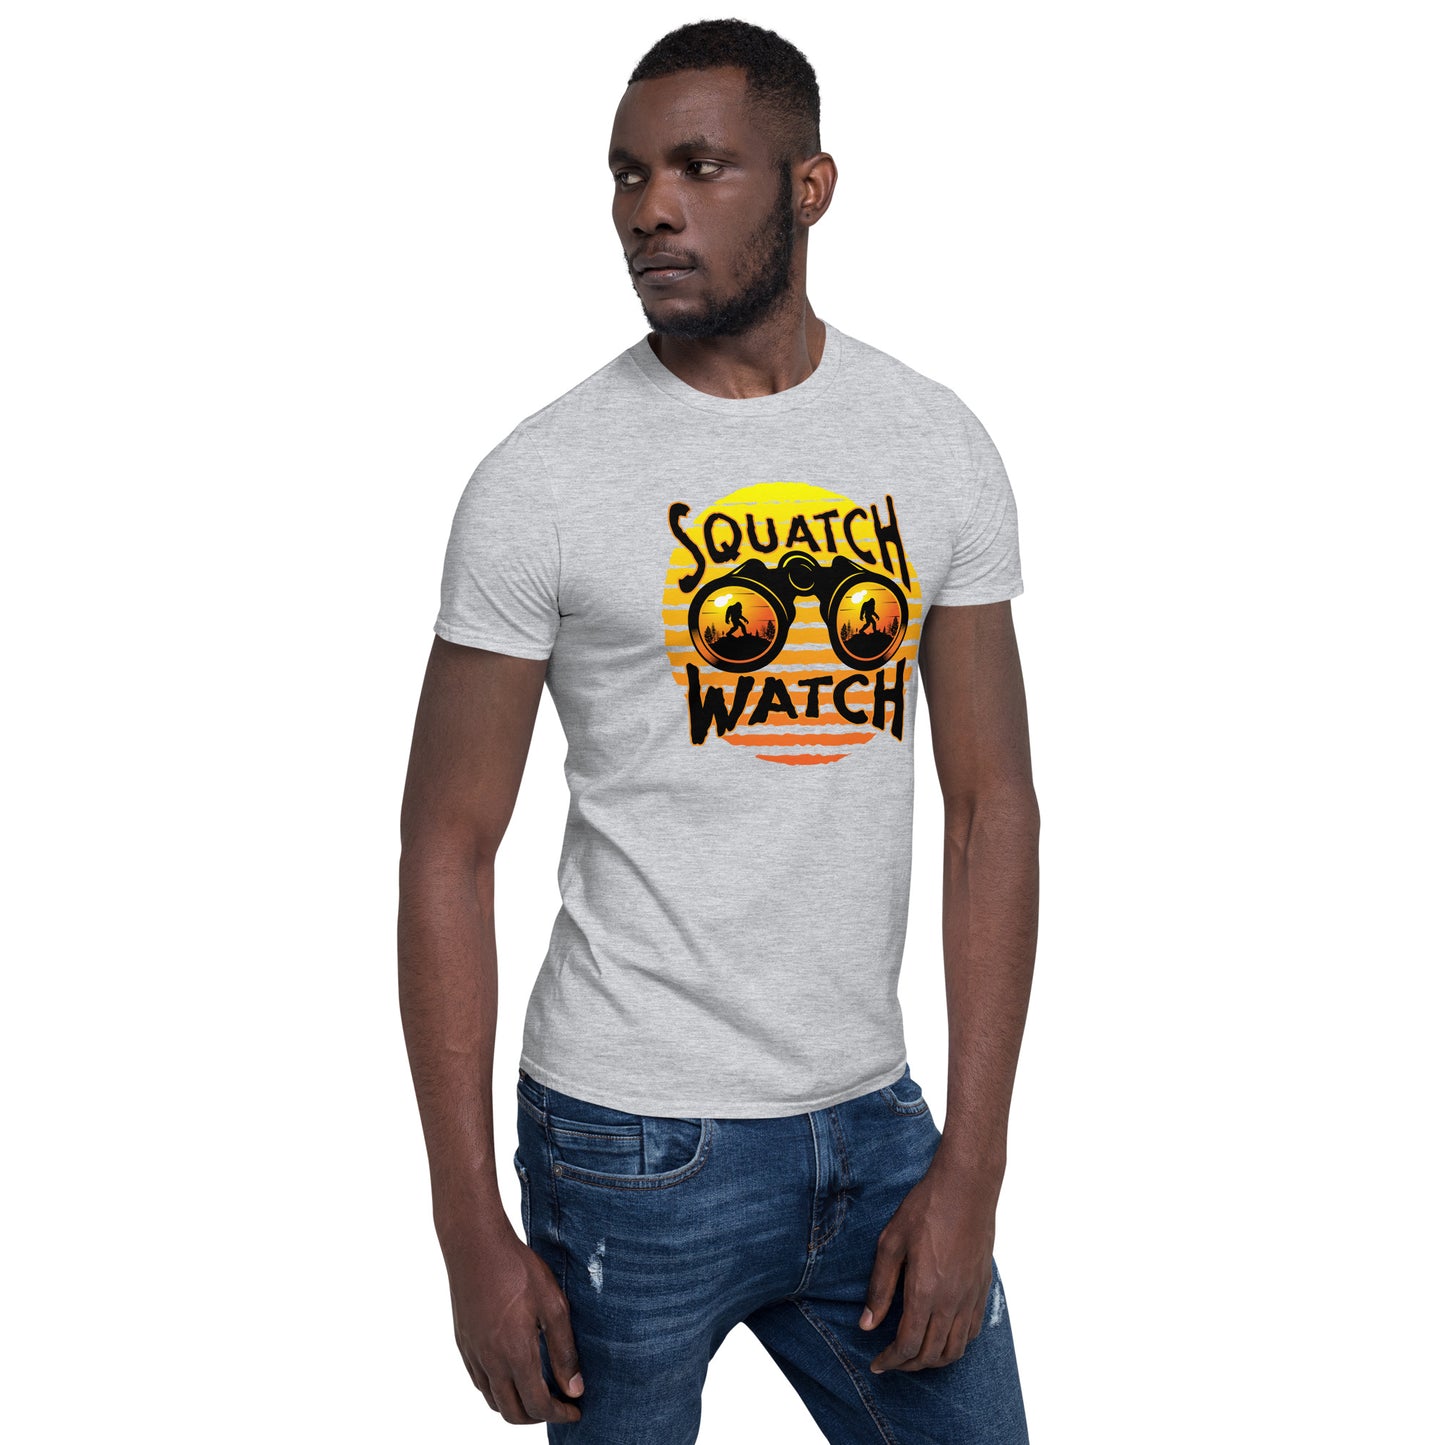 Squatch Watch Short-Sleeve Unisex T-Shirt